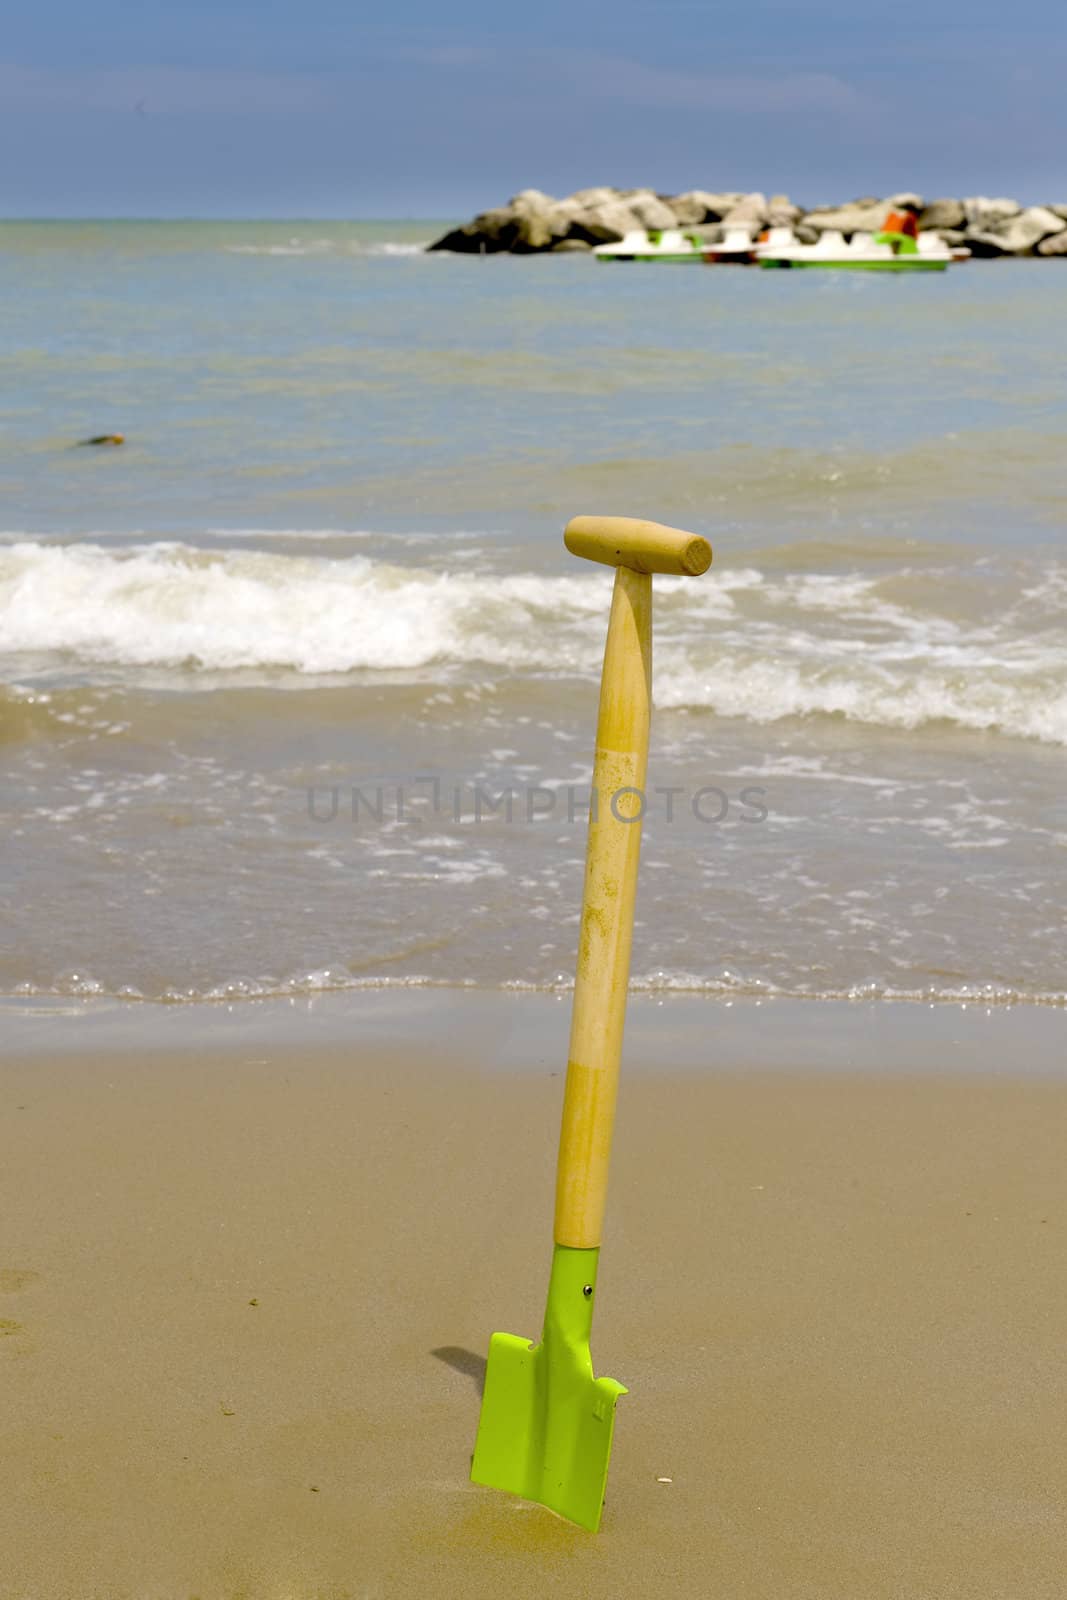 a shovel on the beach